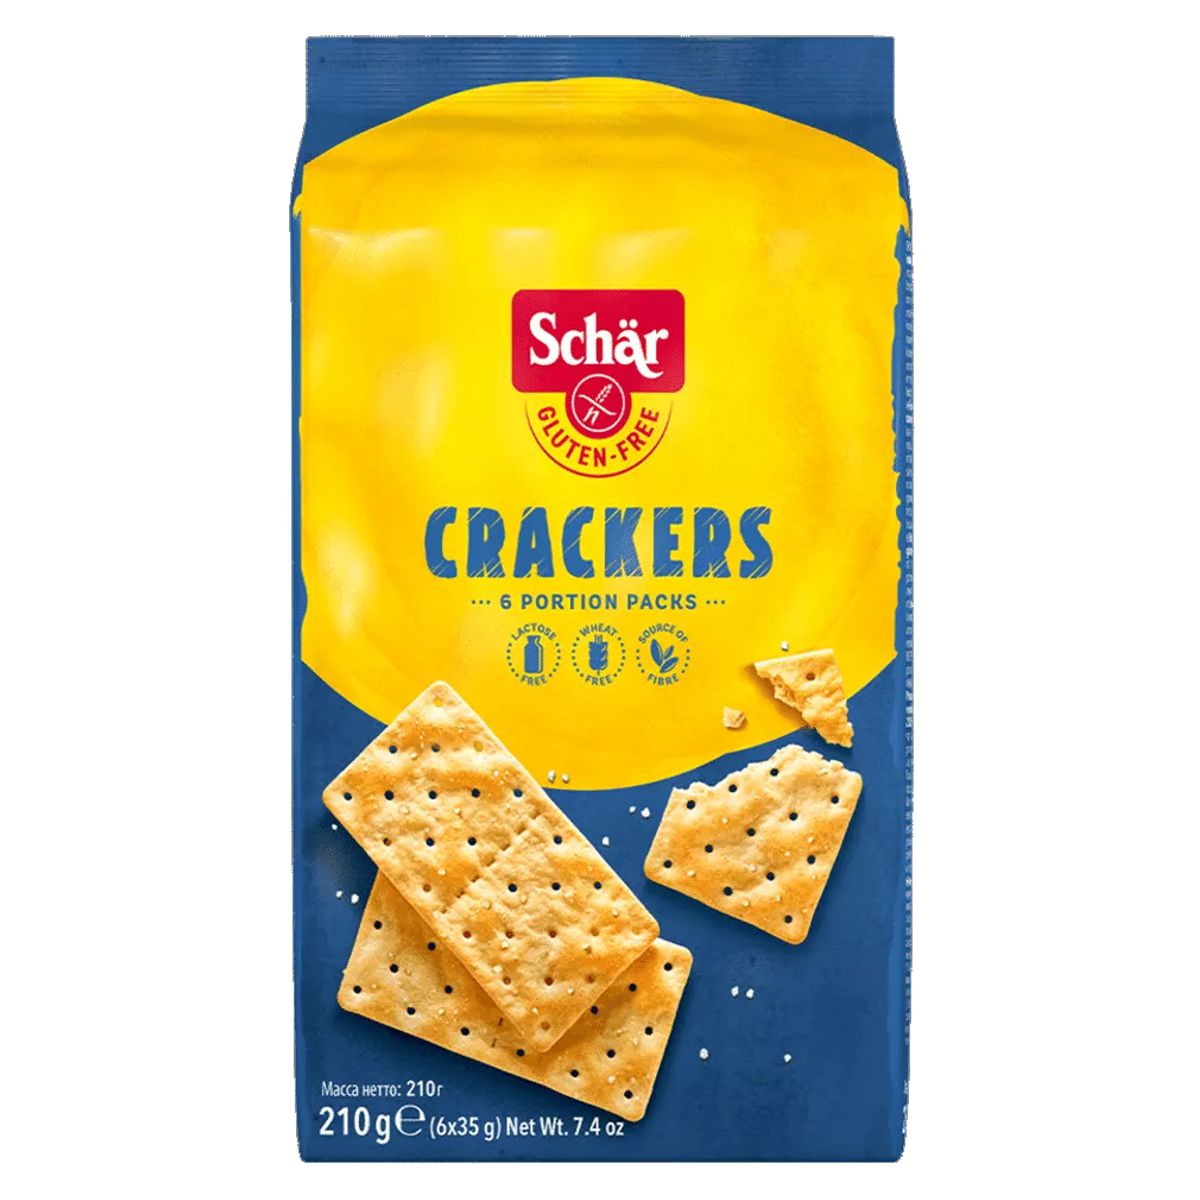 Schär_Crackers_glutenfrei_210g_kaufen